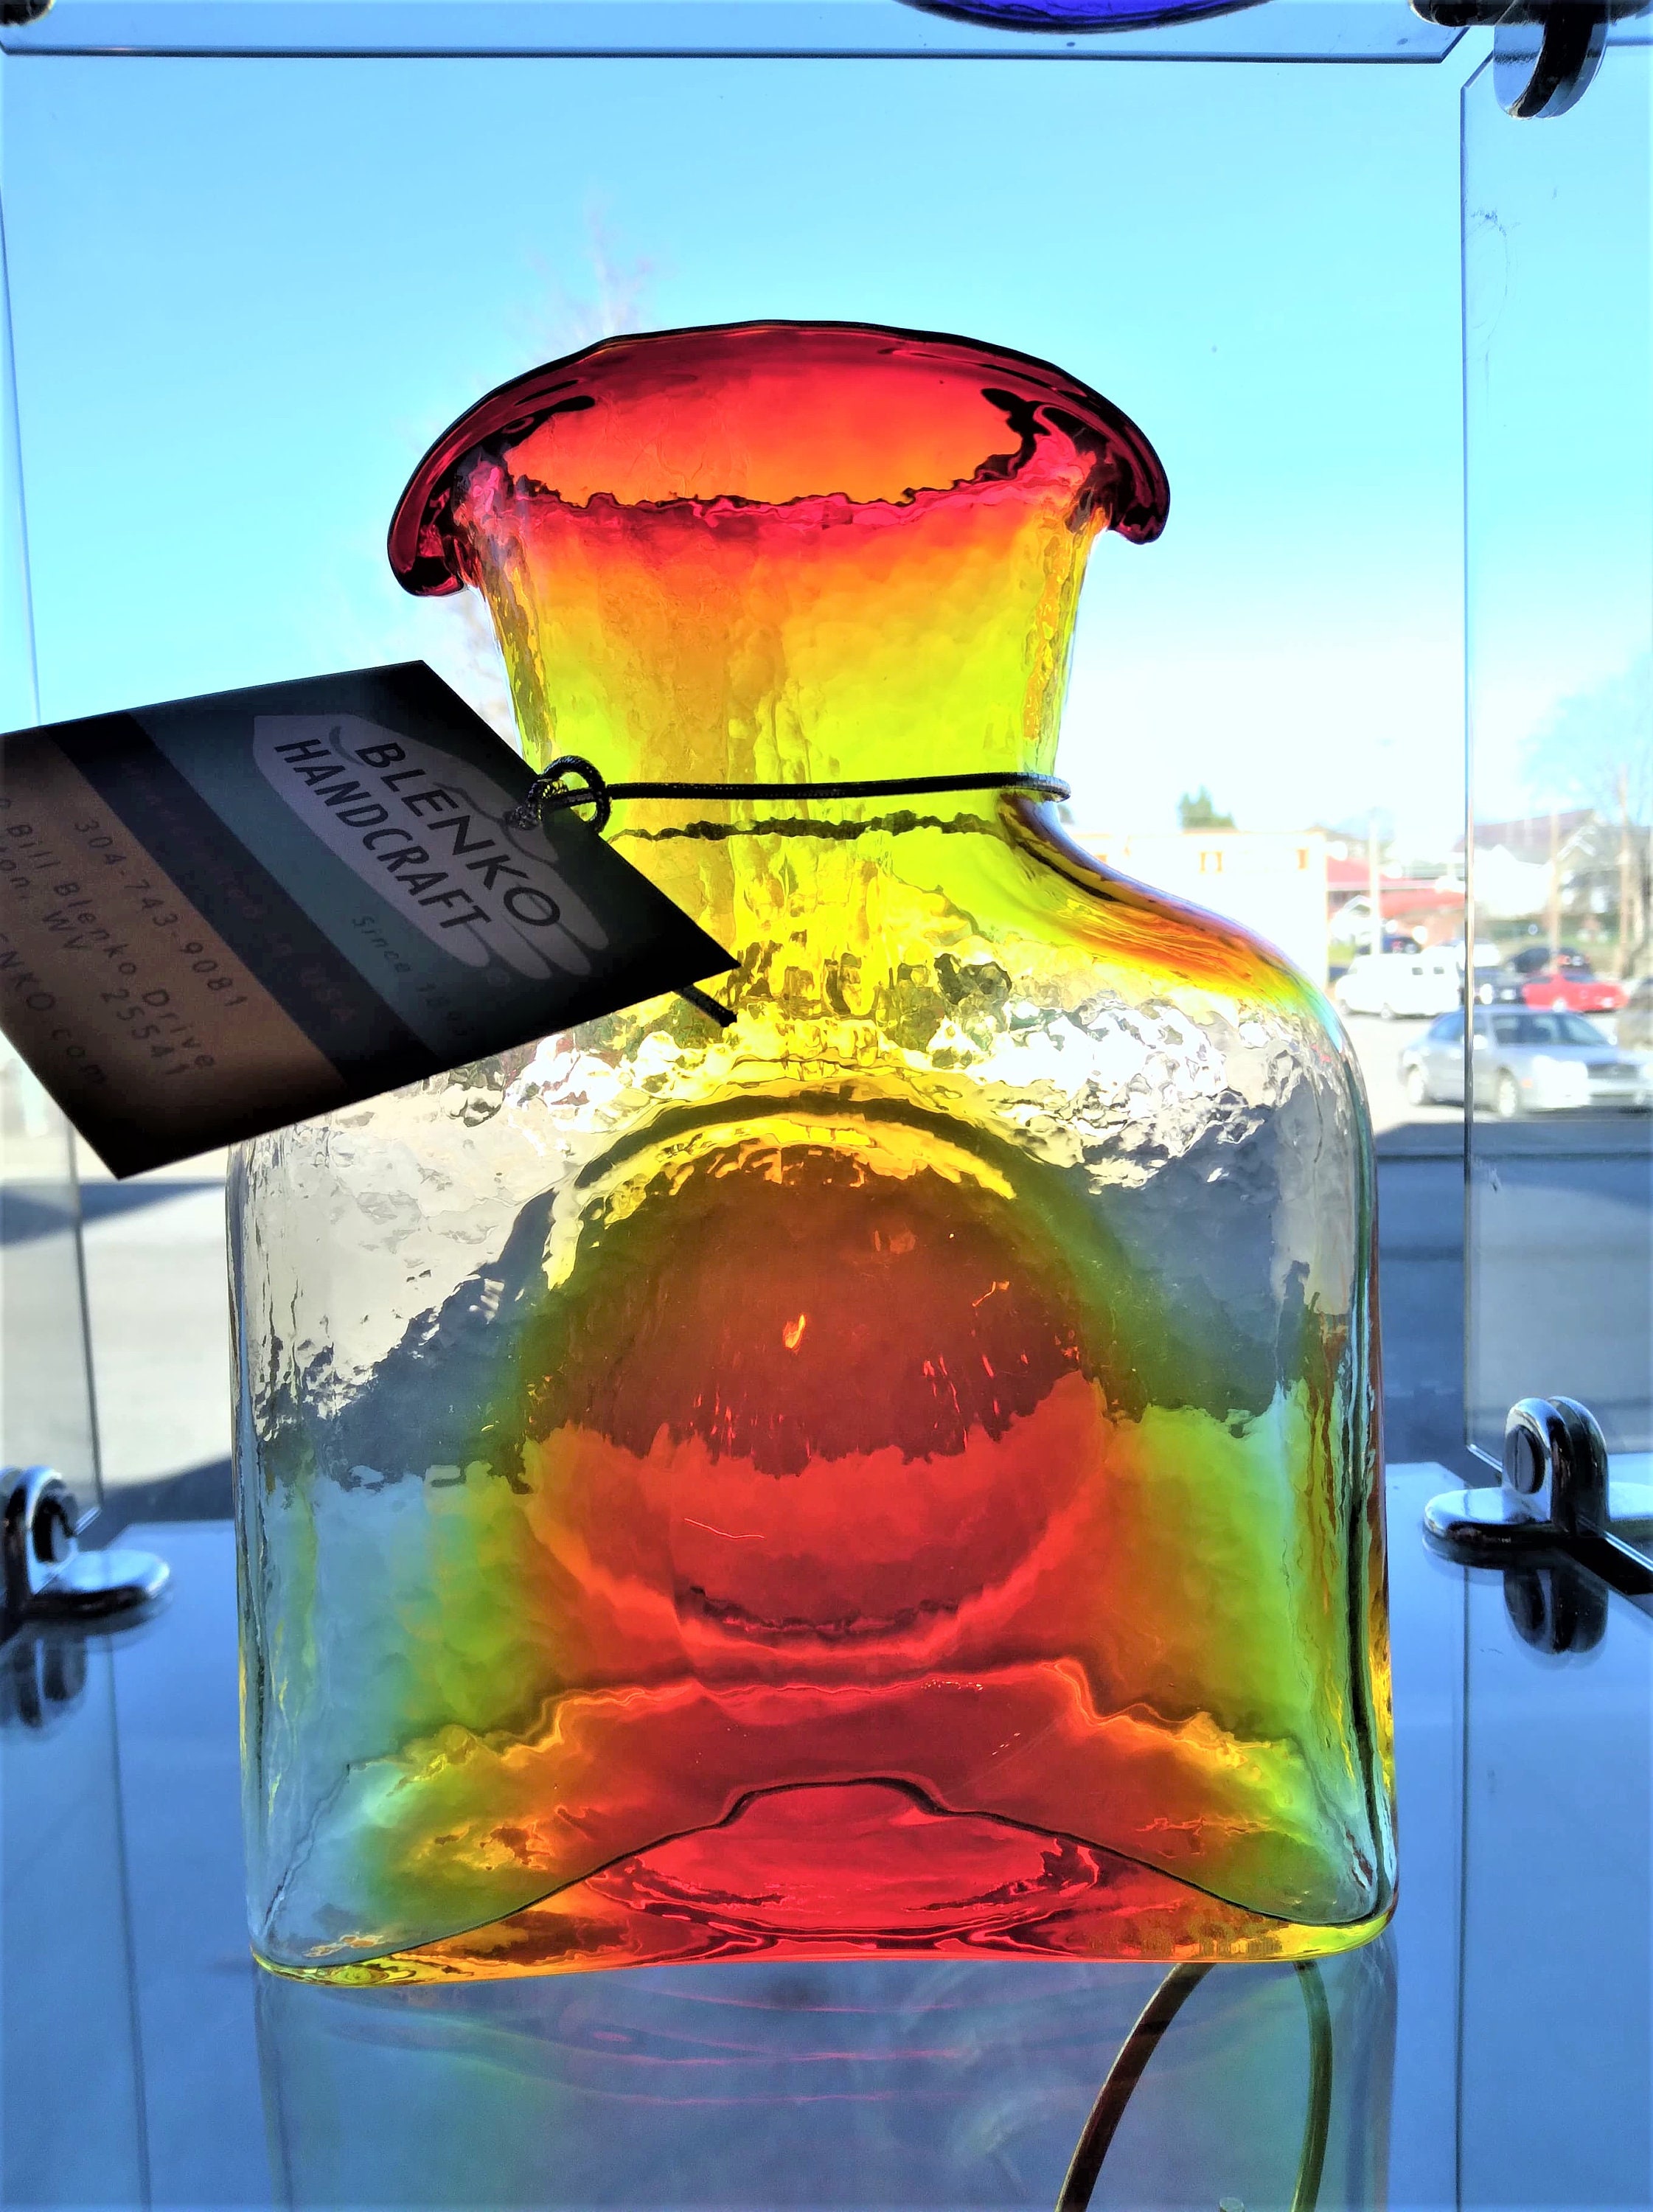 Blenko Glass Water Bottle Cobalt — The Shops at Mount Vernon